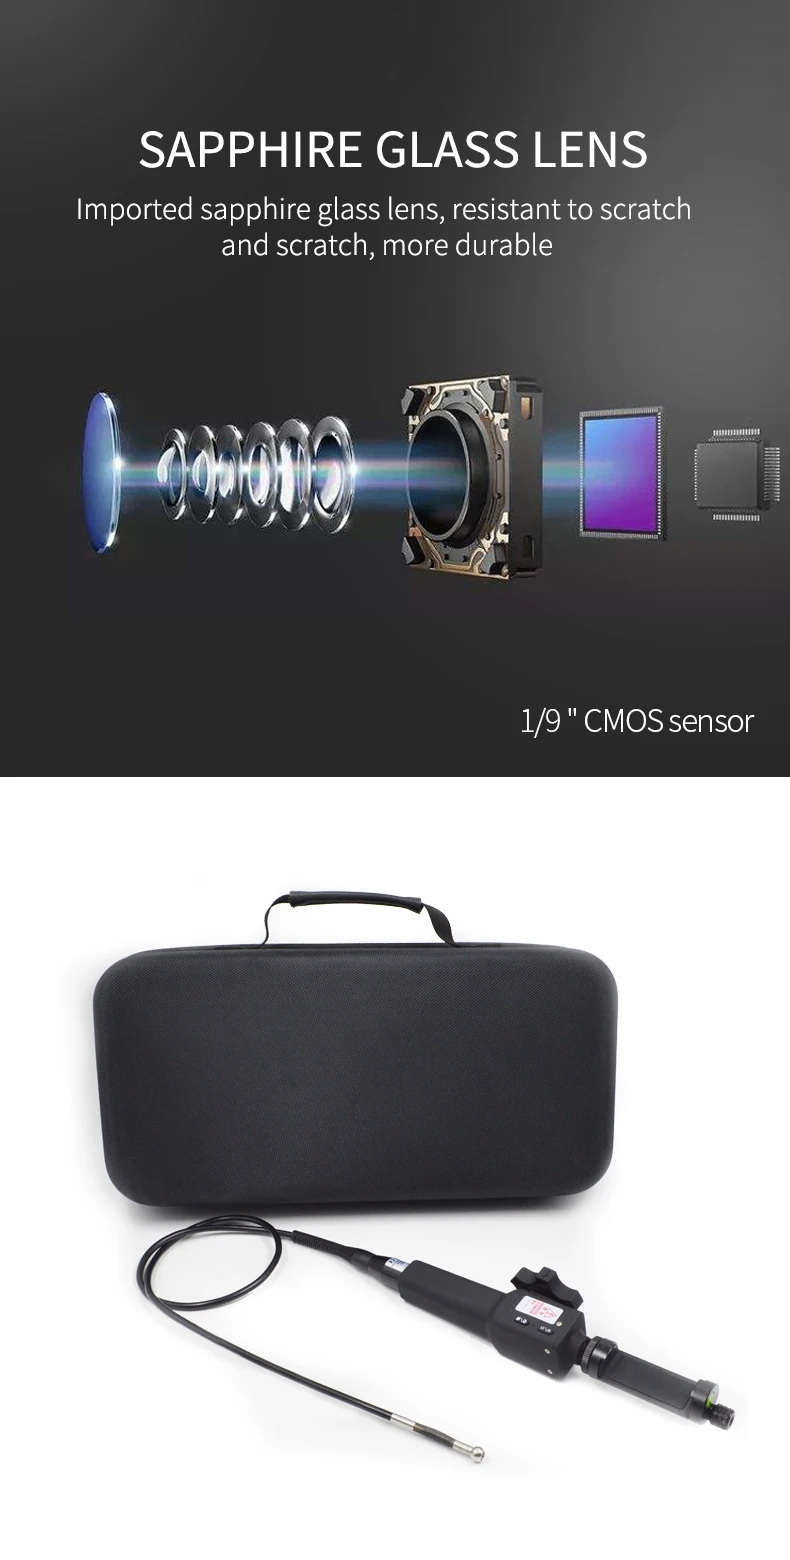 Цифровая промышленная камера-эндоскоп Steerable 720P Borescope 5,5 мм USB Автомобильная камера для осмотра труб двигателя для смартфонов Android